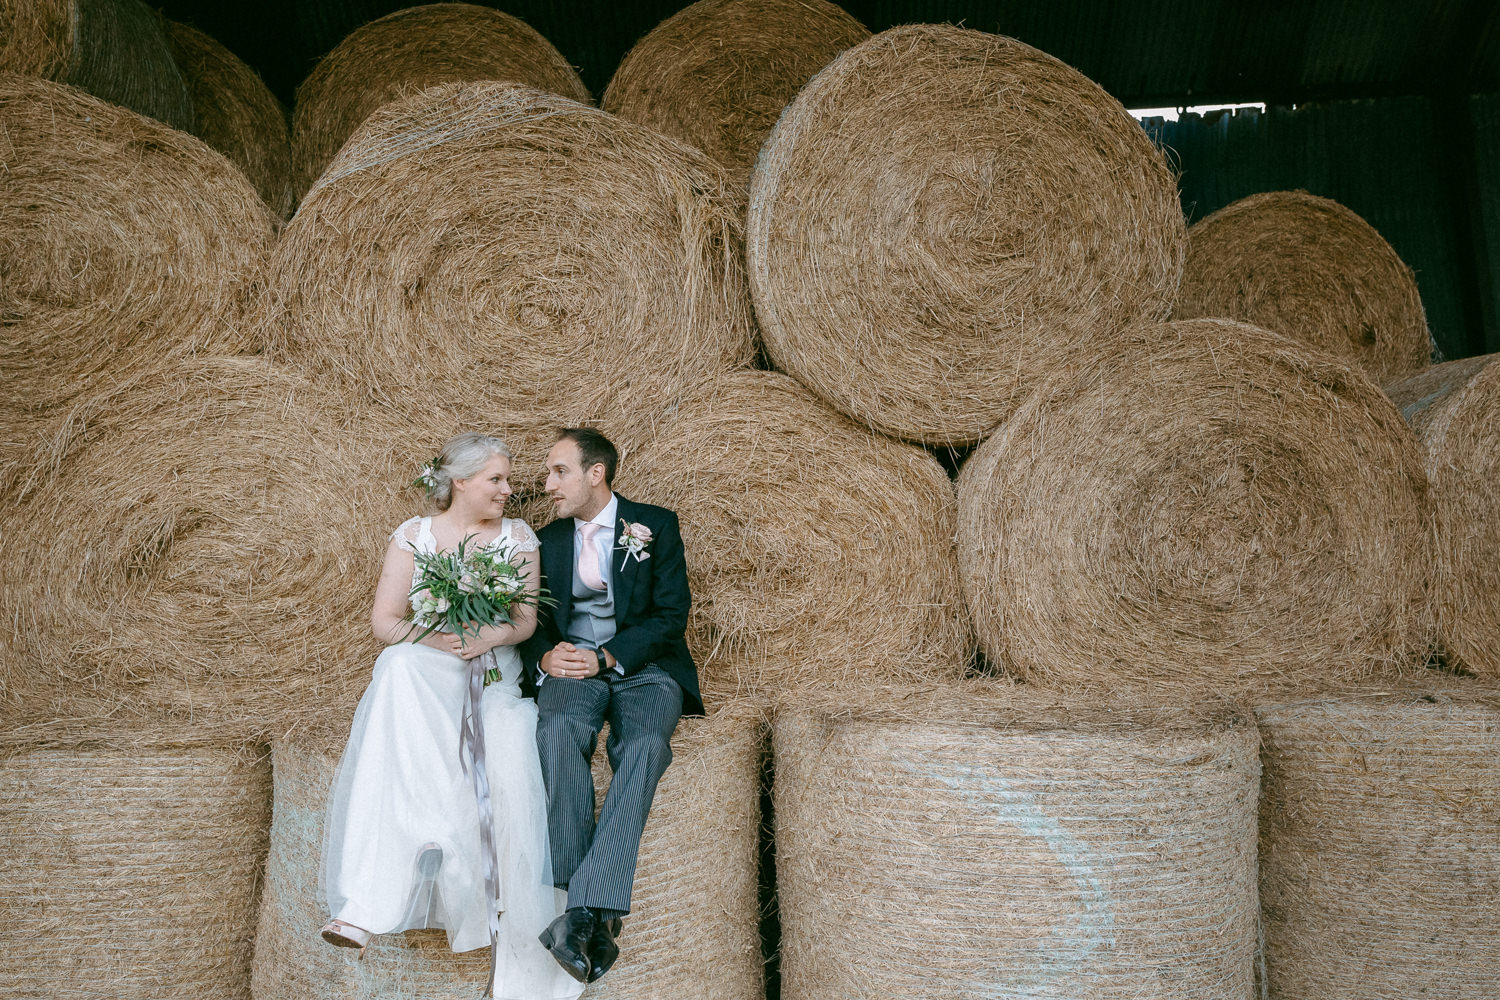 R&R-Winkworth Farm | Wedding Photography-624.JPG